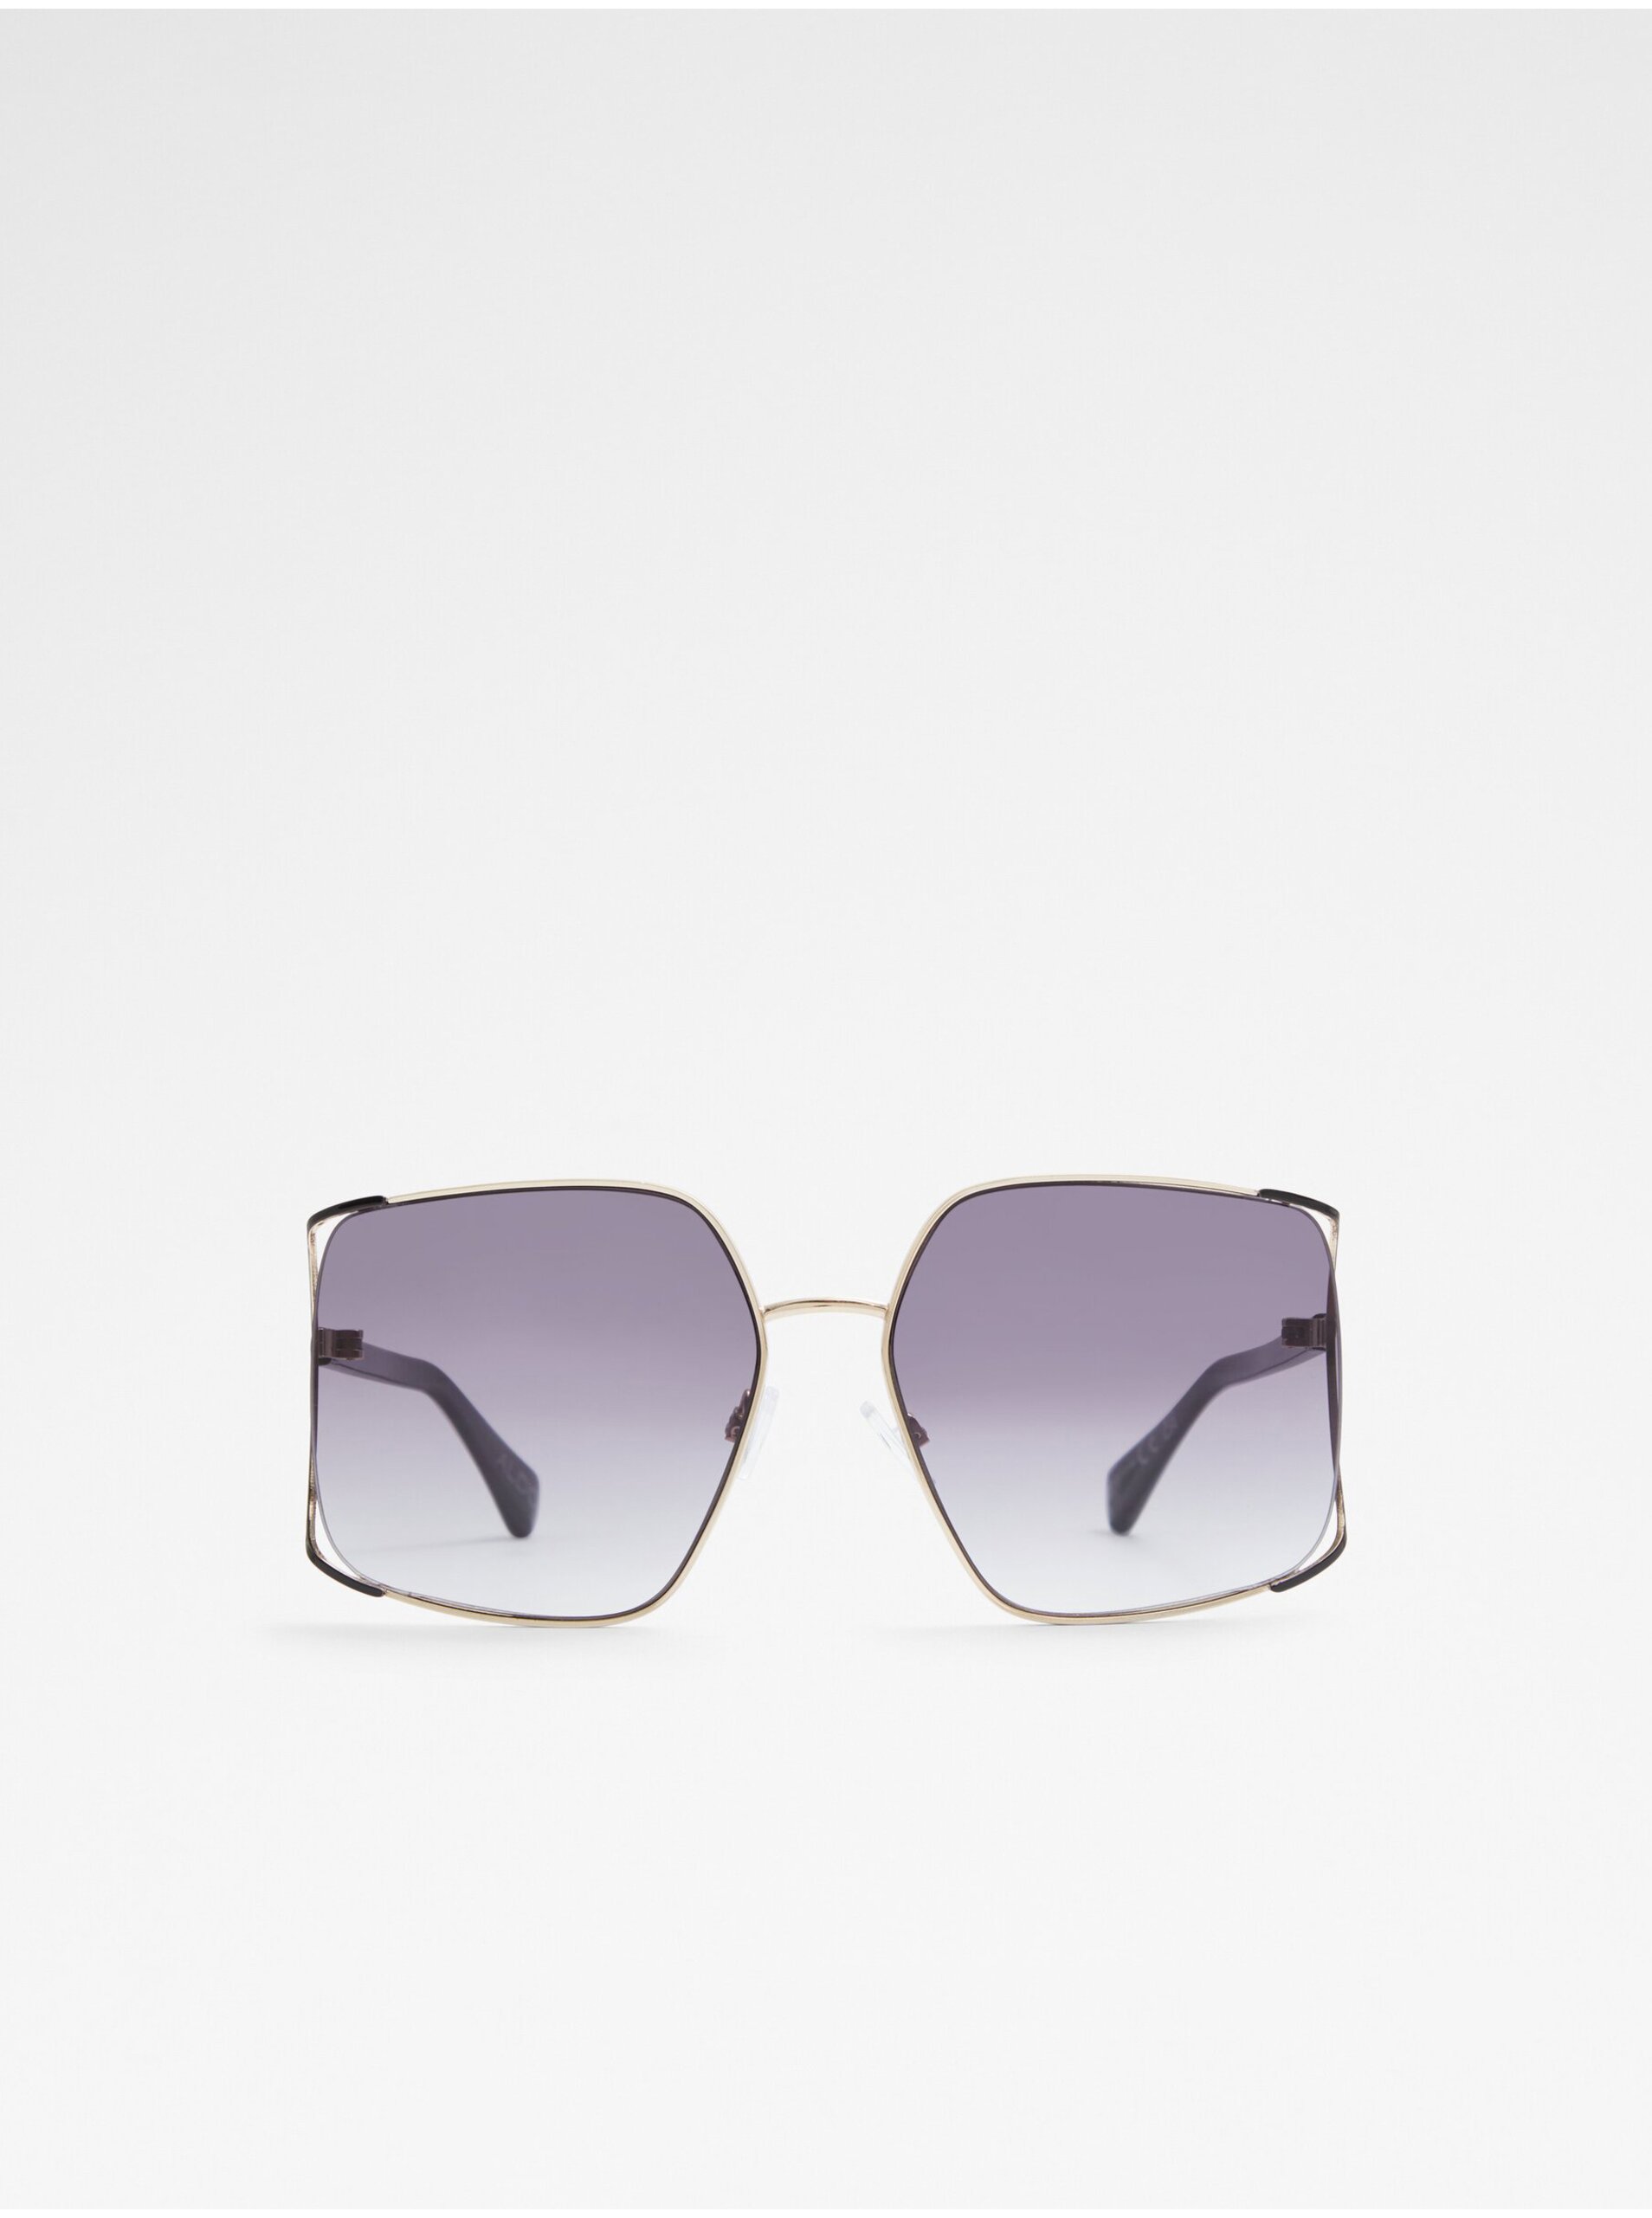 E-shop Černé dámské sluneční brýle ALDO Theliwin